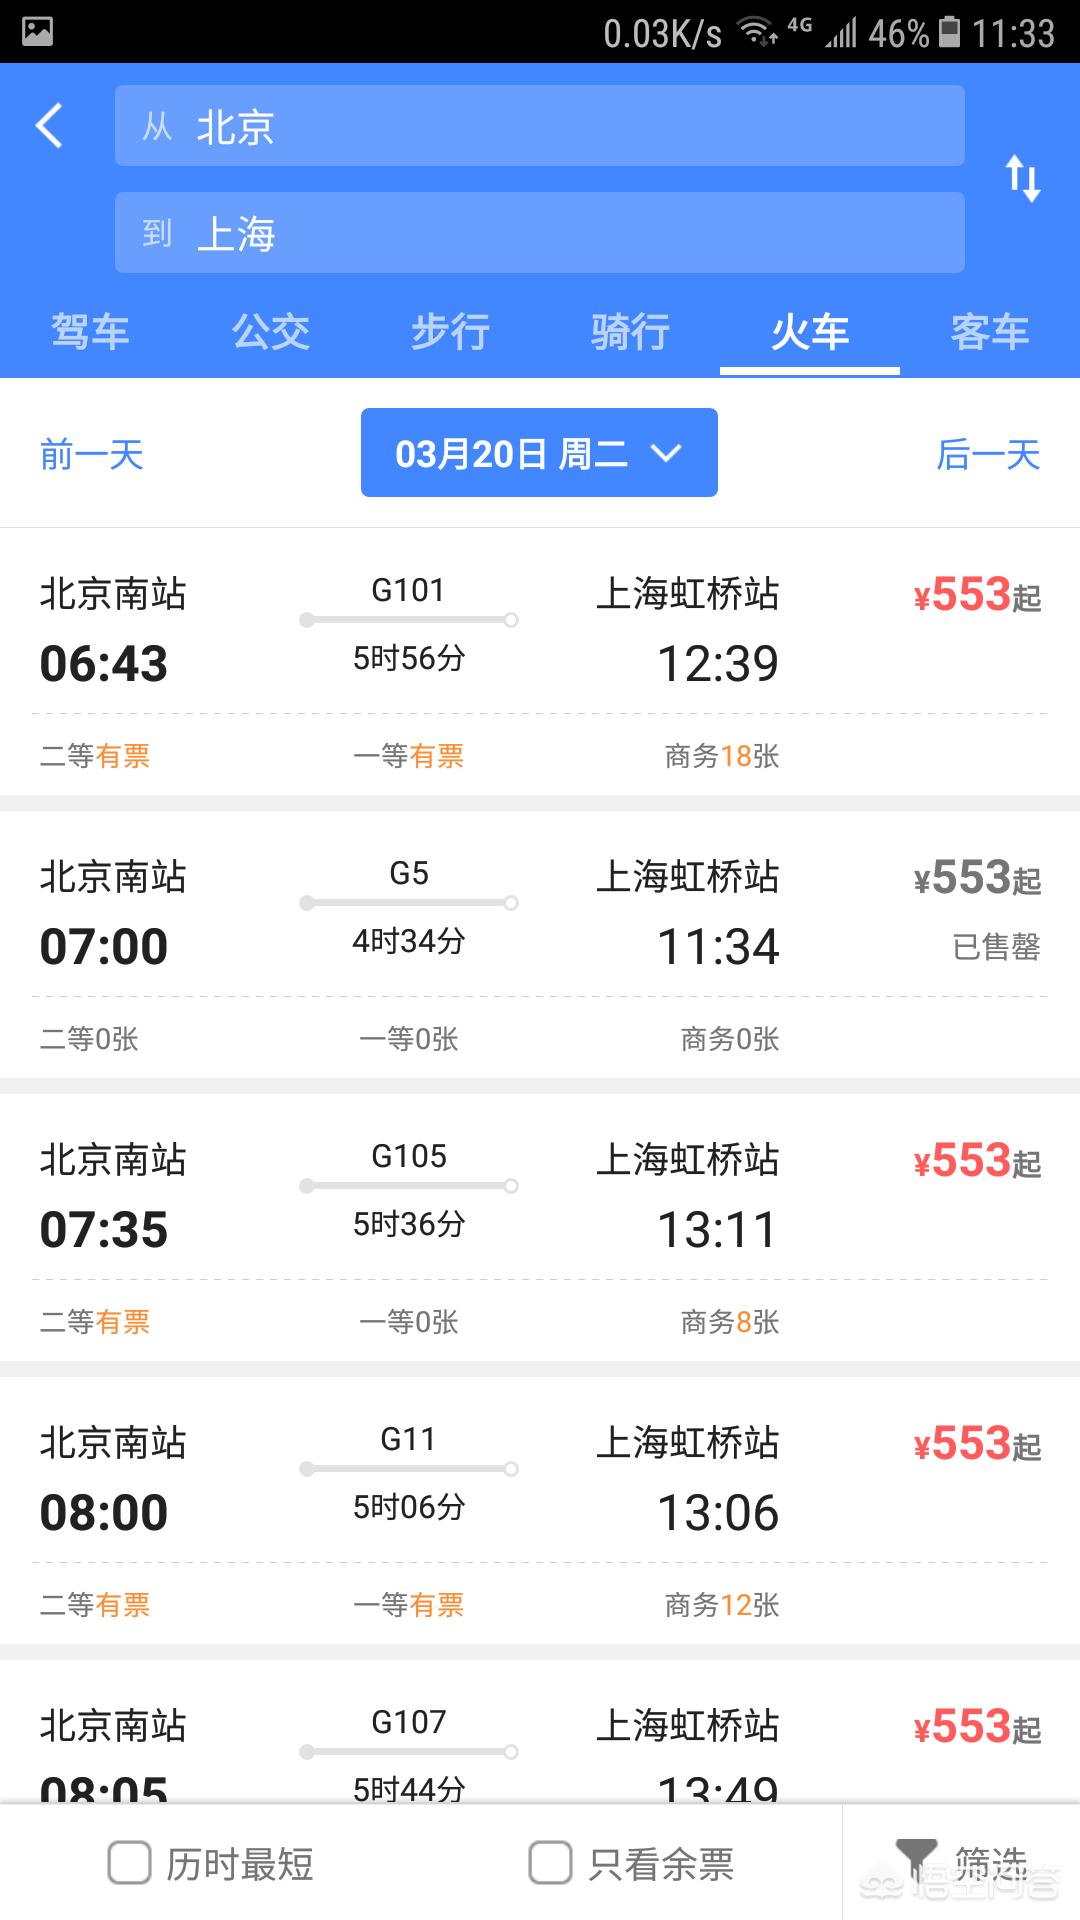 上海到北京2.5小时高铁 坐高铁从北京到上海需要多久